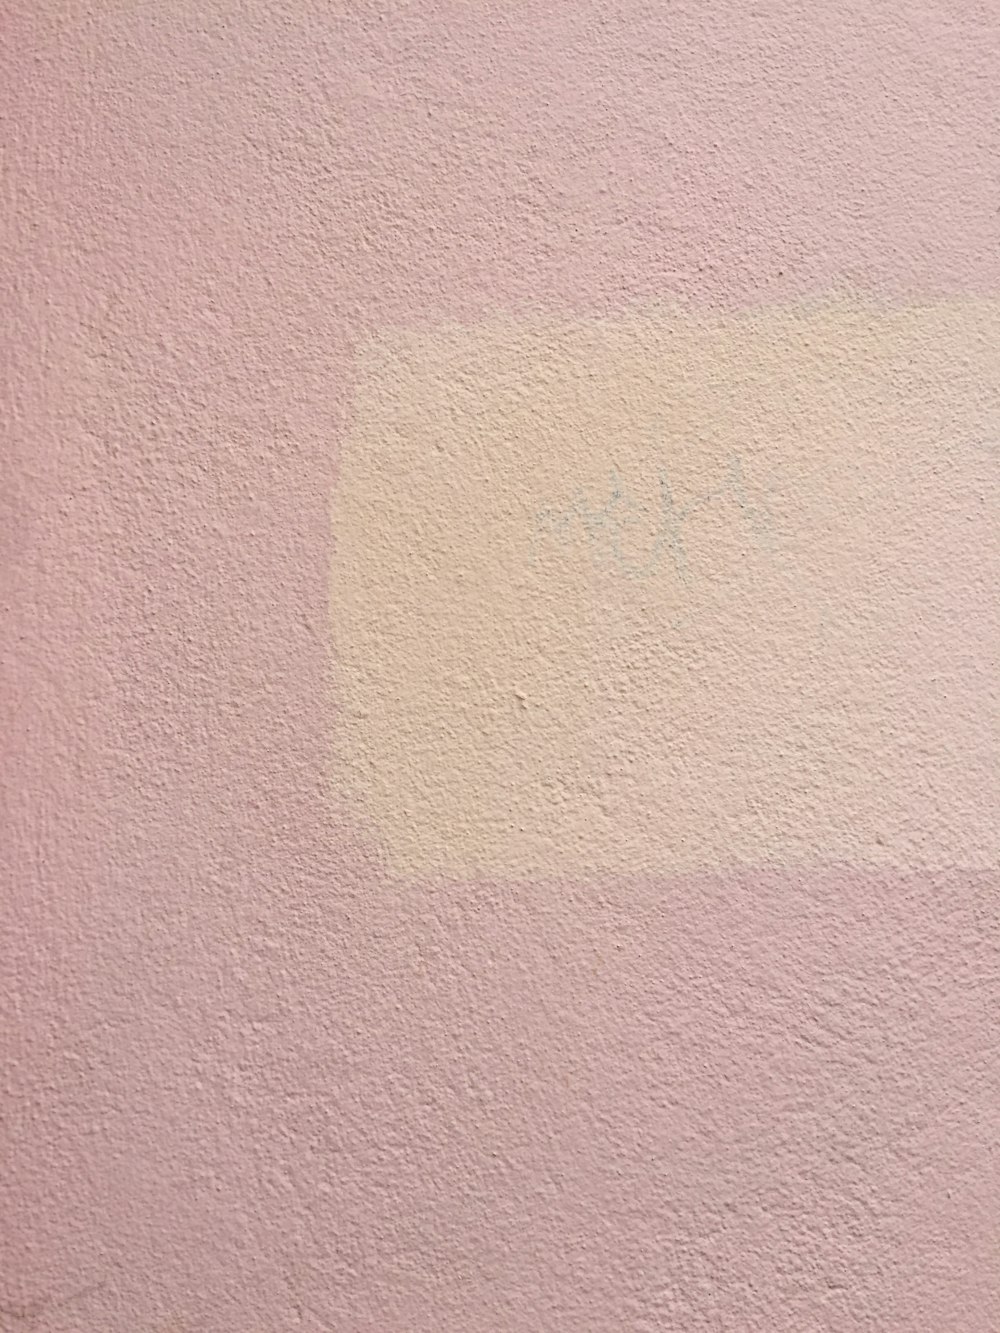 superficie in calcestruzzo rosa